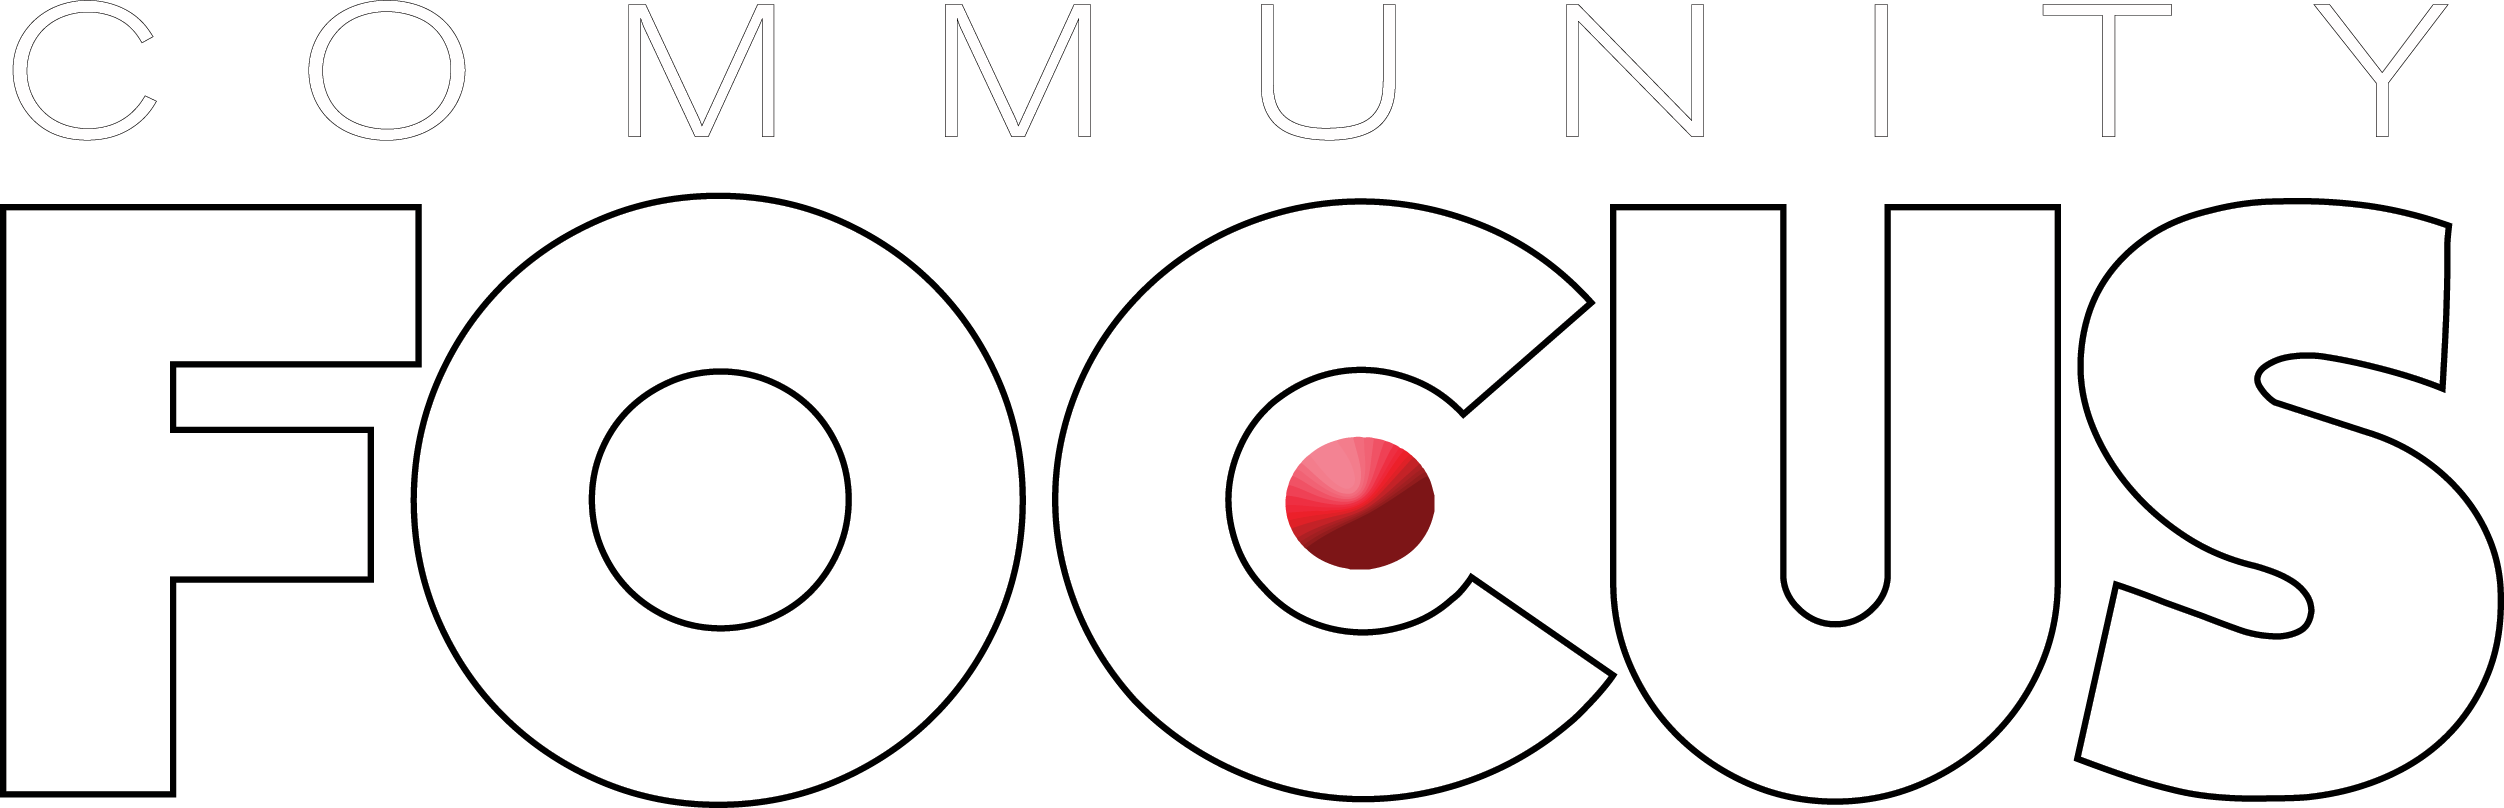 community-focus